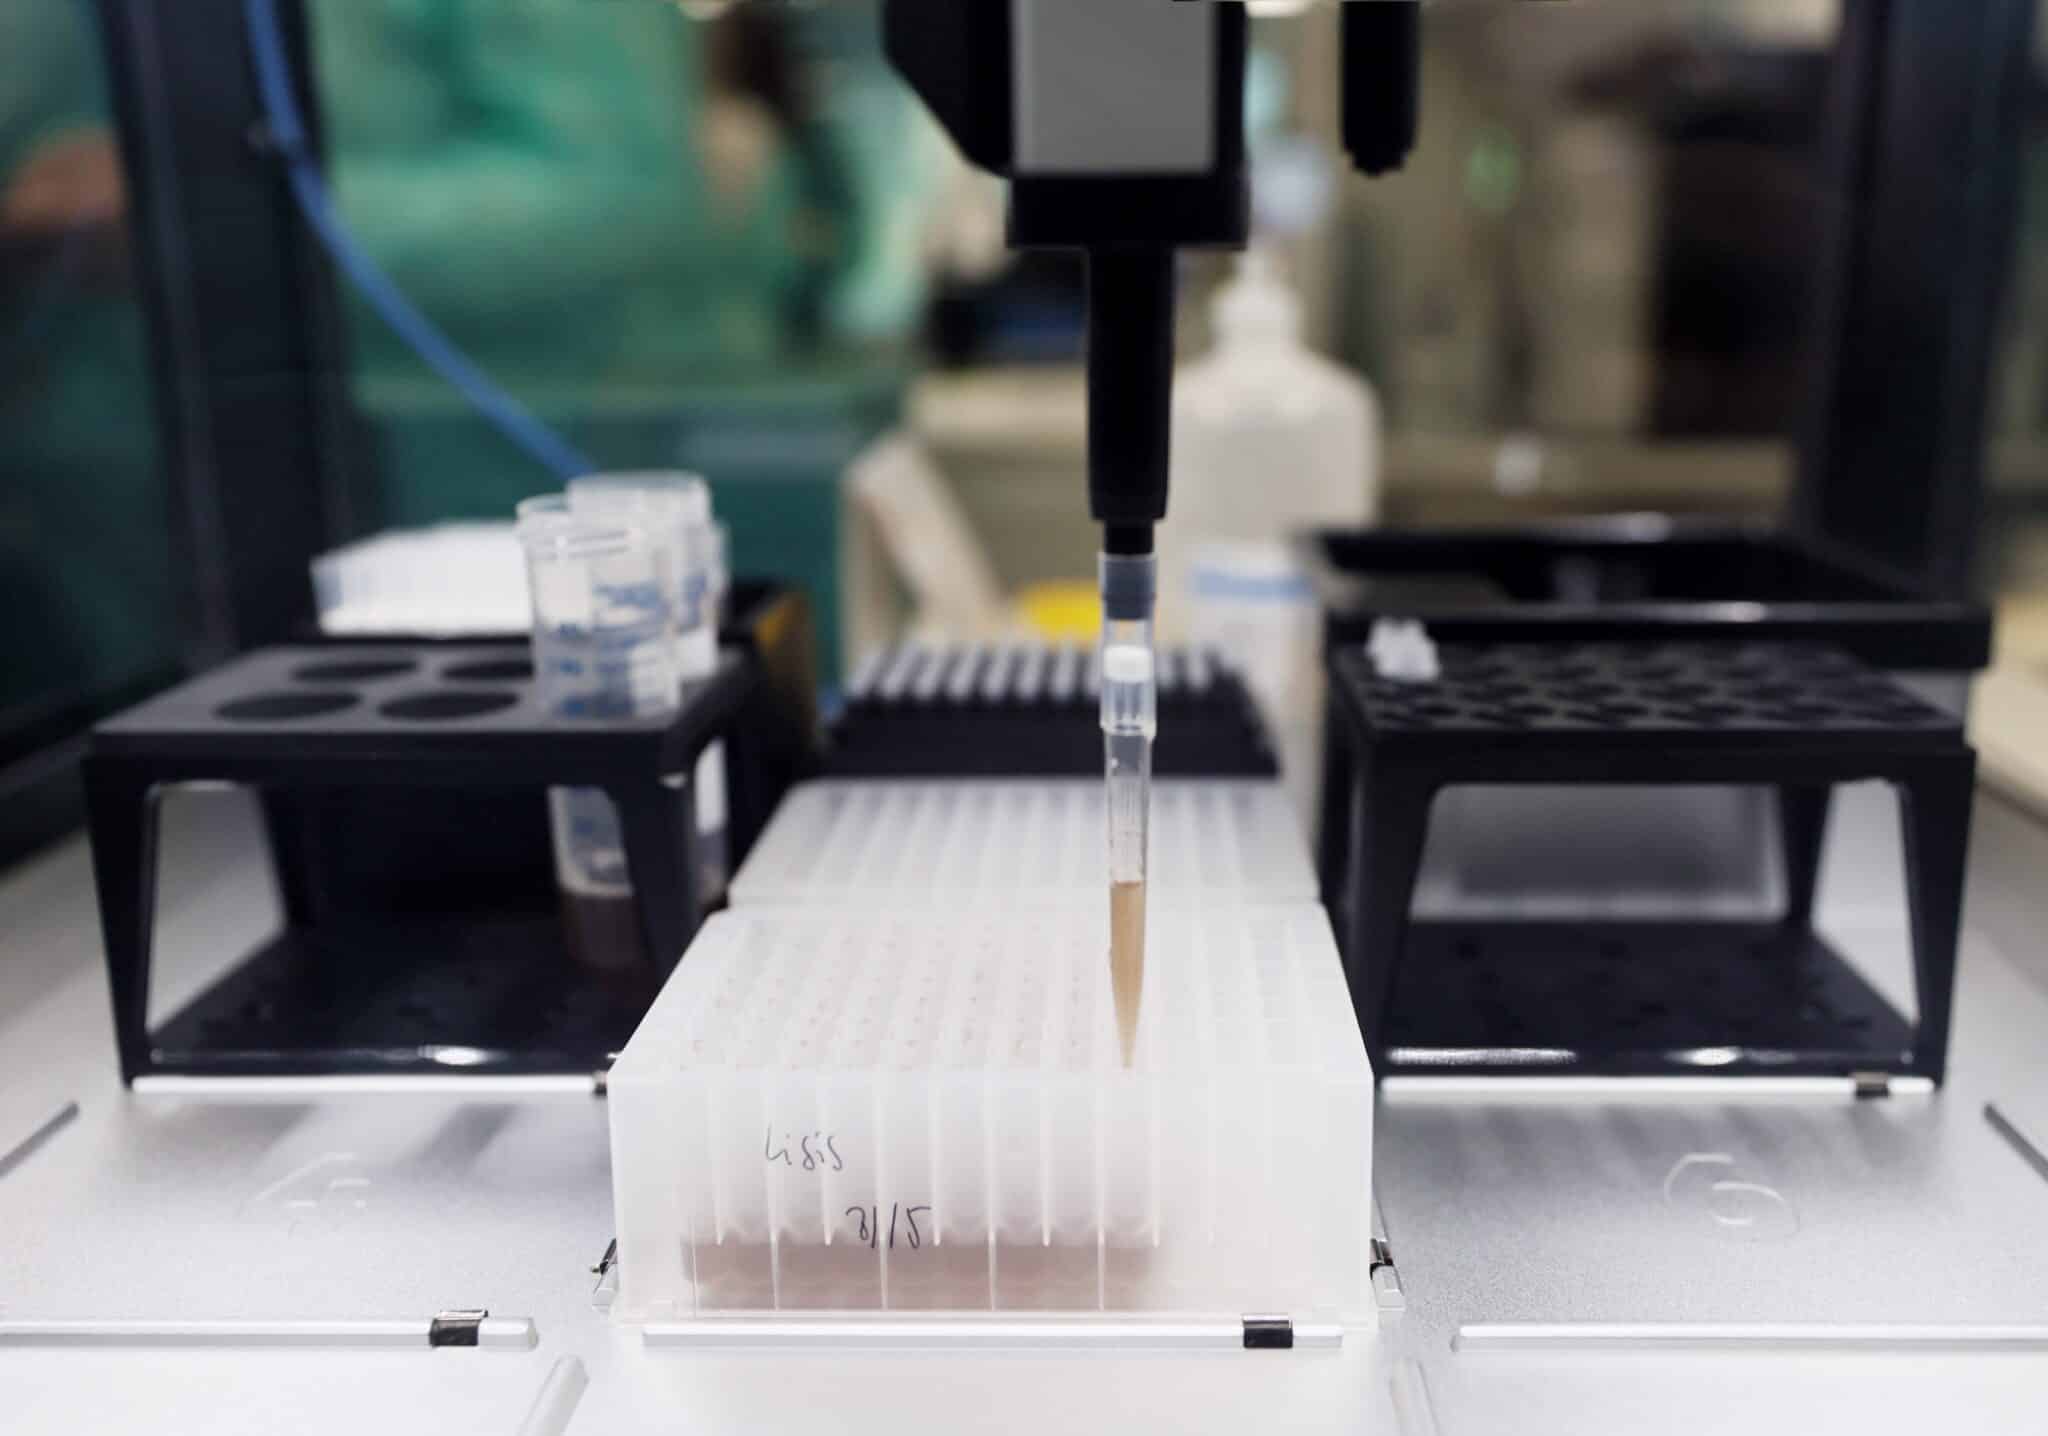 Probetas de pruebas PCR en el Laboratorio de Microbiología del Hospital público Gregorio Marañón